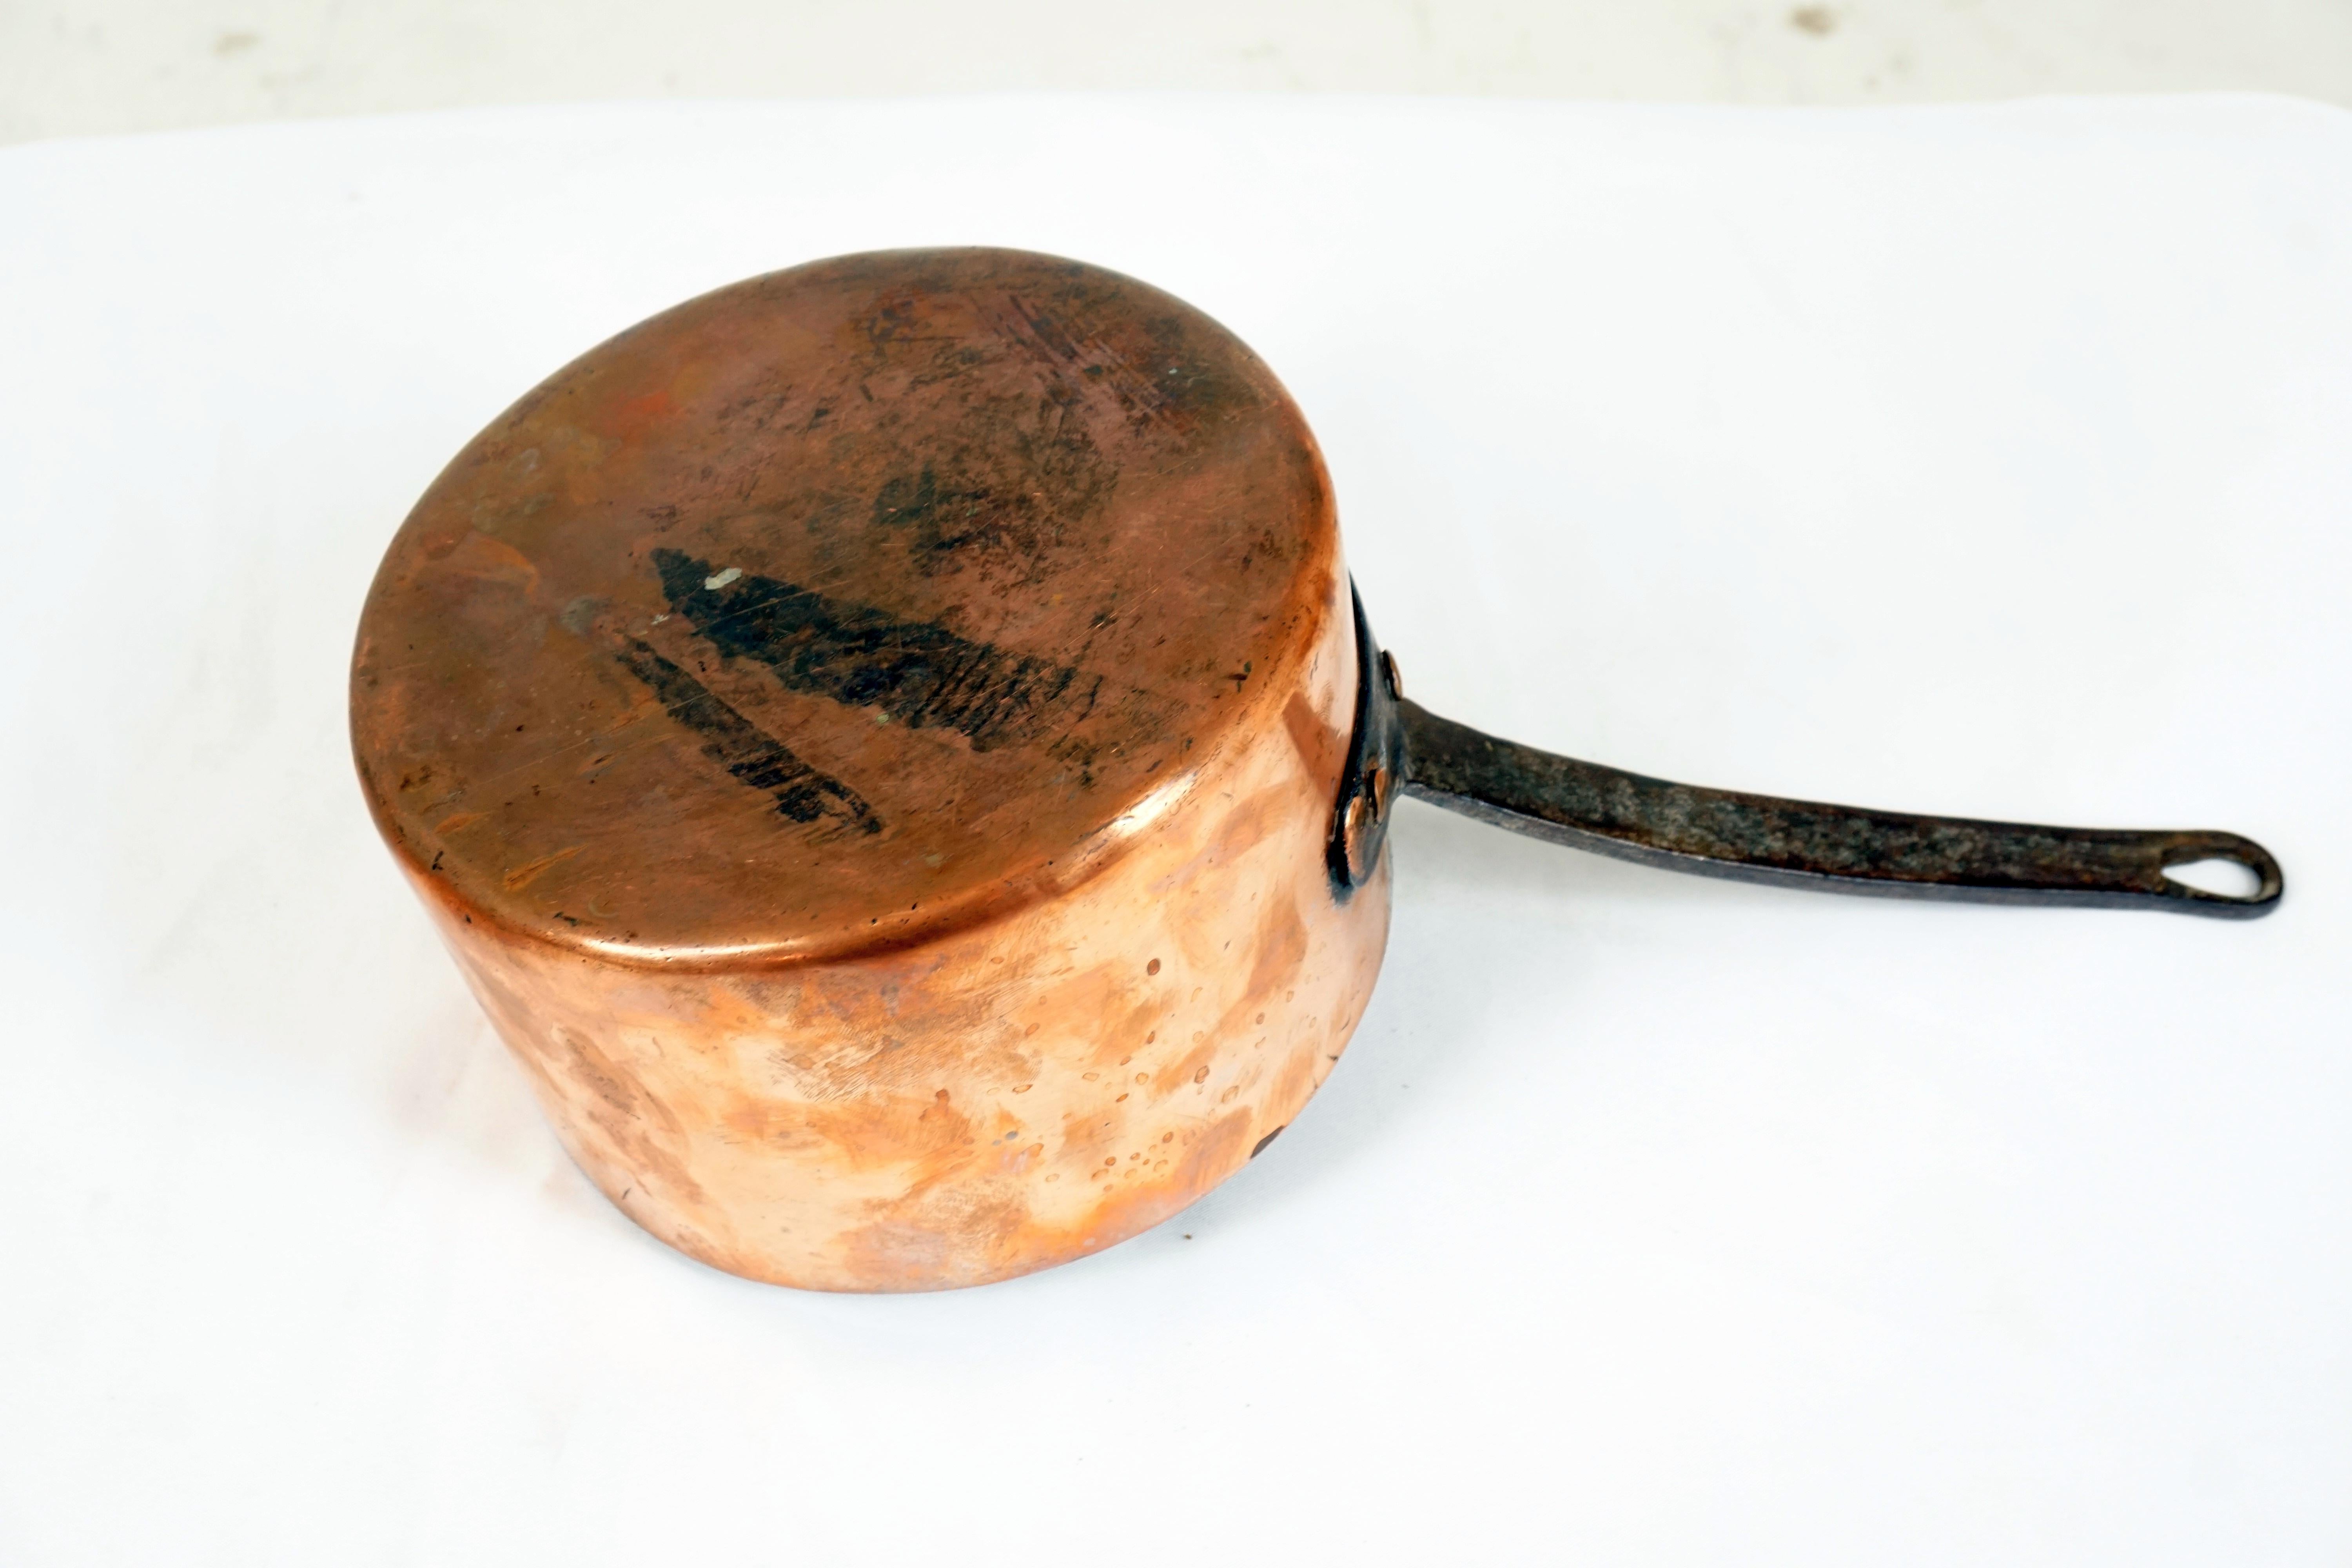 vintage copper pans for sale